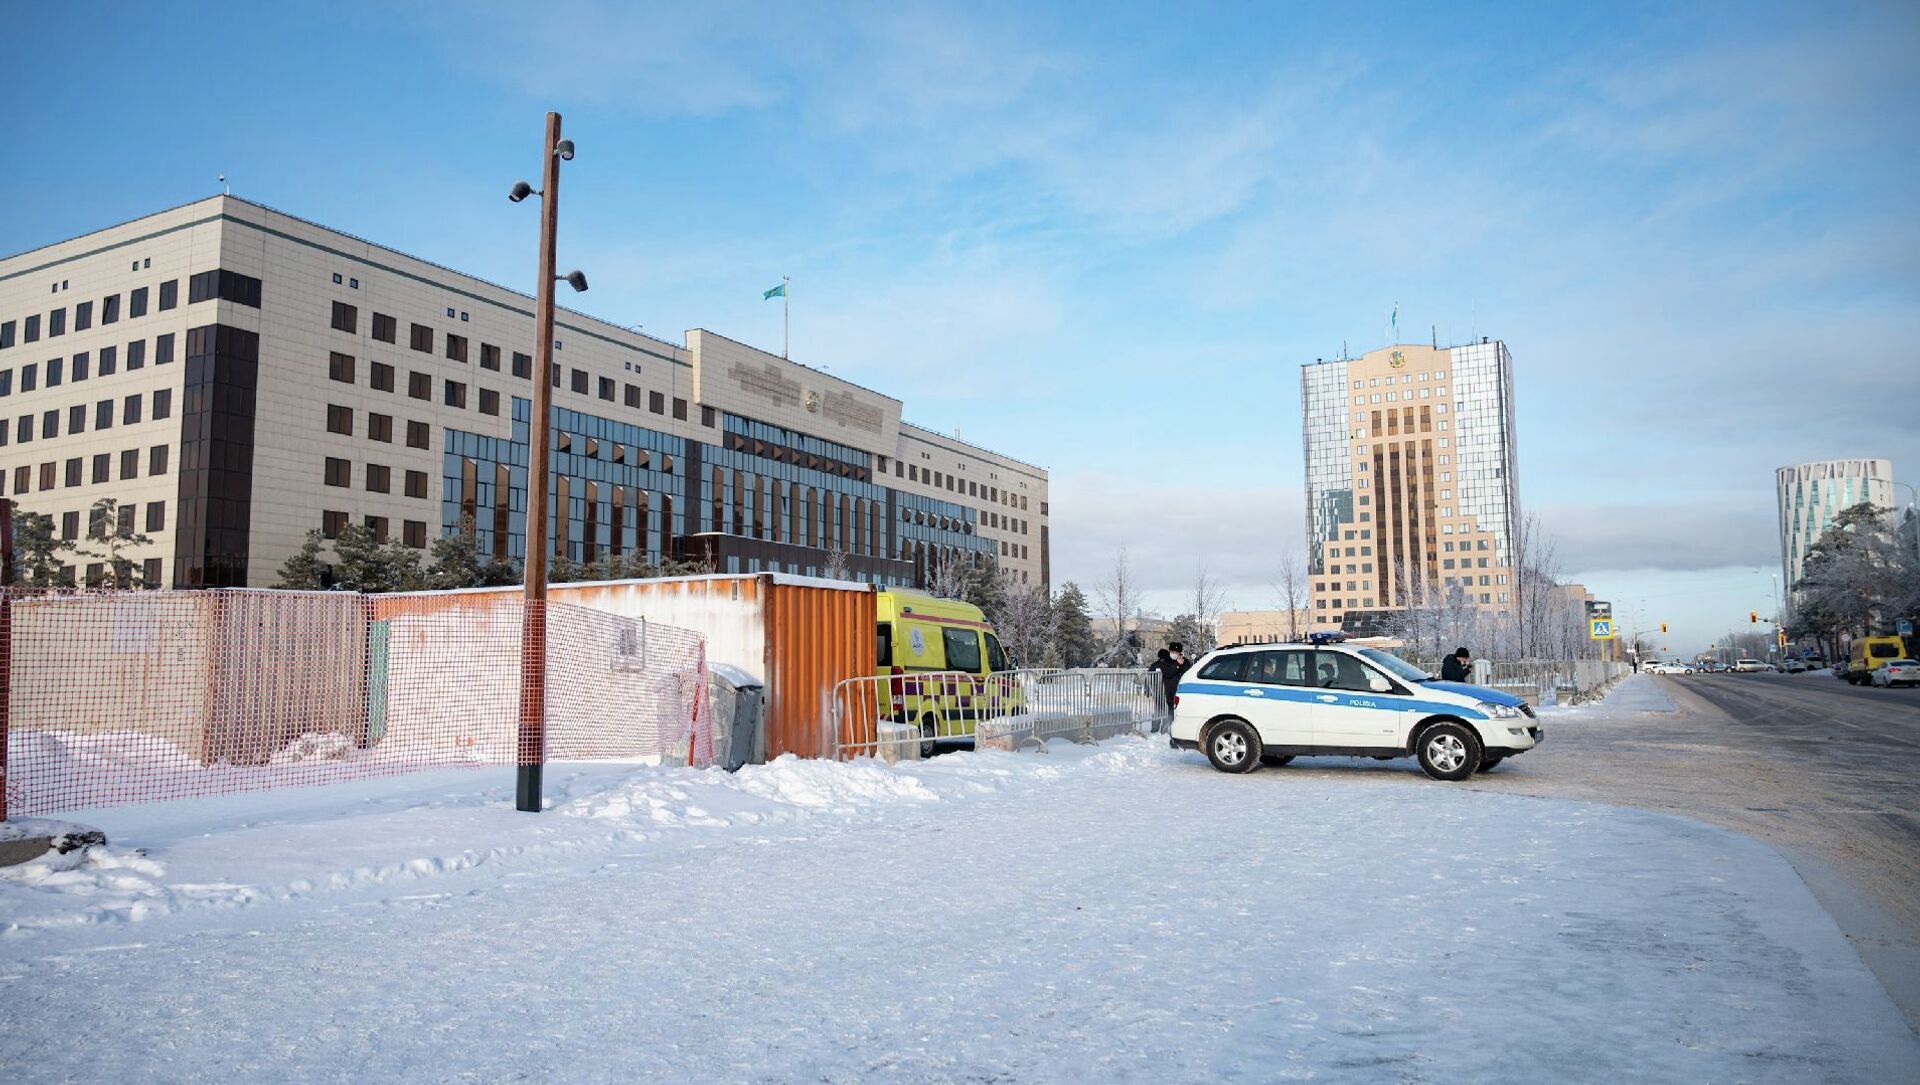 Ситуация в столице Казахстана после снятия режима ЧП, 19 января 2022 года - Sputnik Казахстан, 1920, 19.01.2022